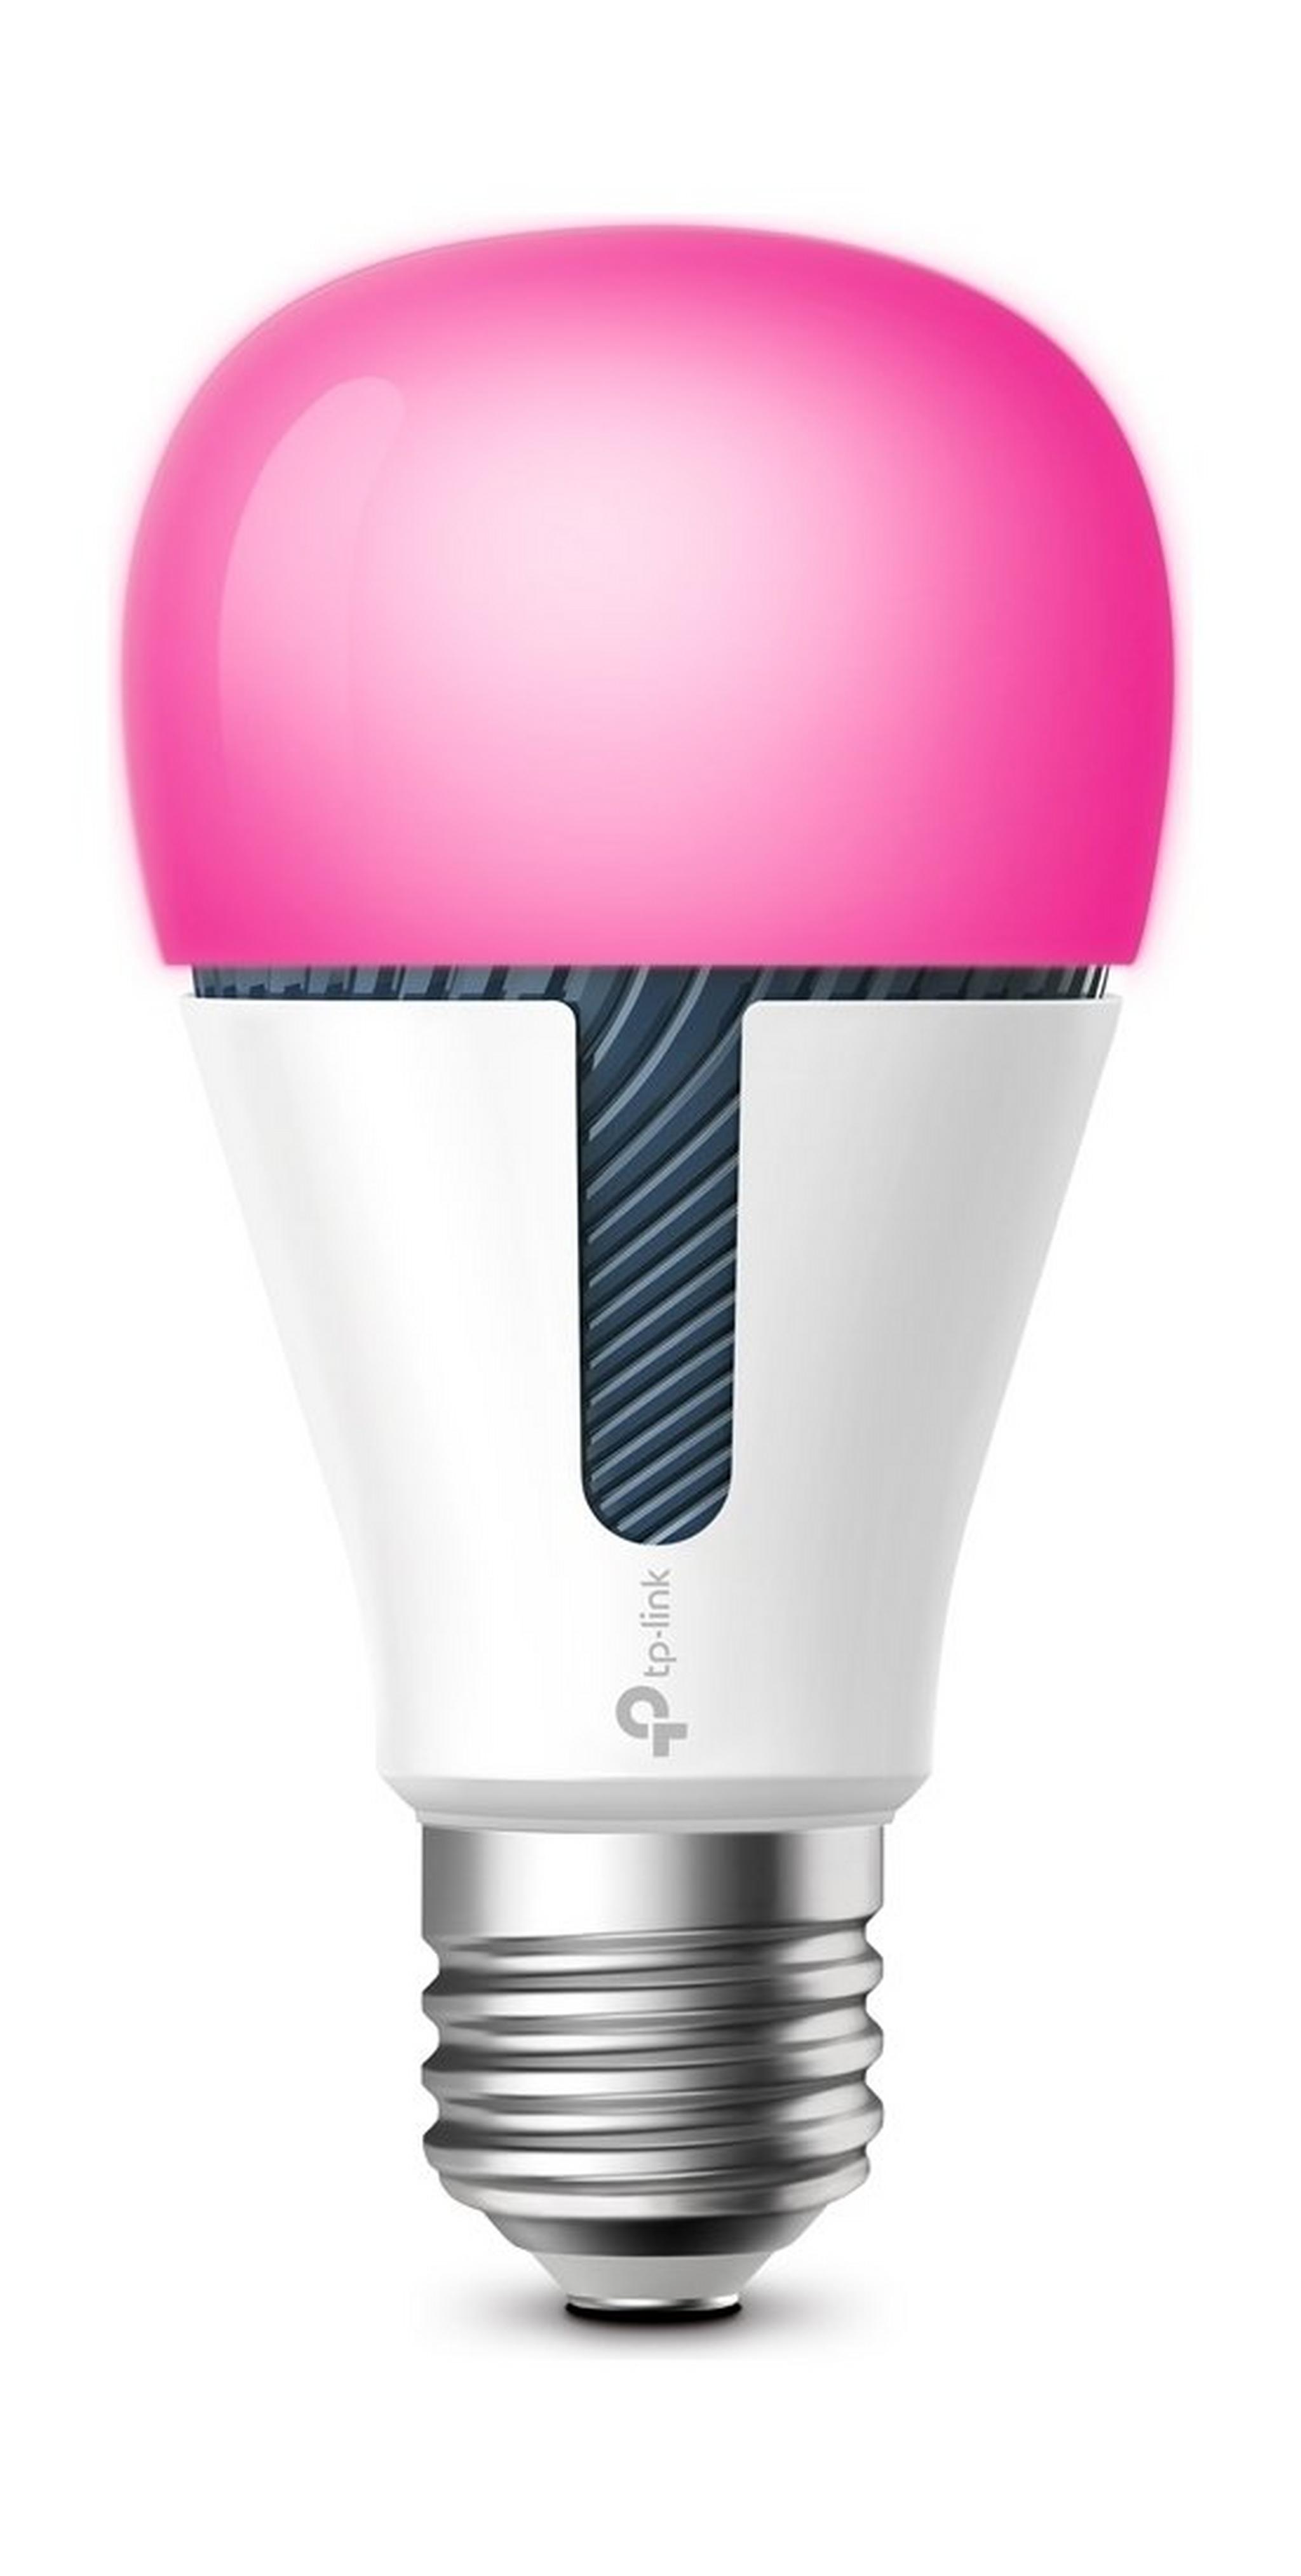 TP - Link Kasa KL130 800 Lumens Multicolor Smart Light Bulb